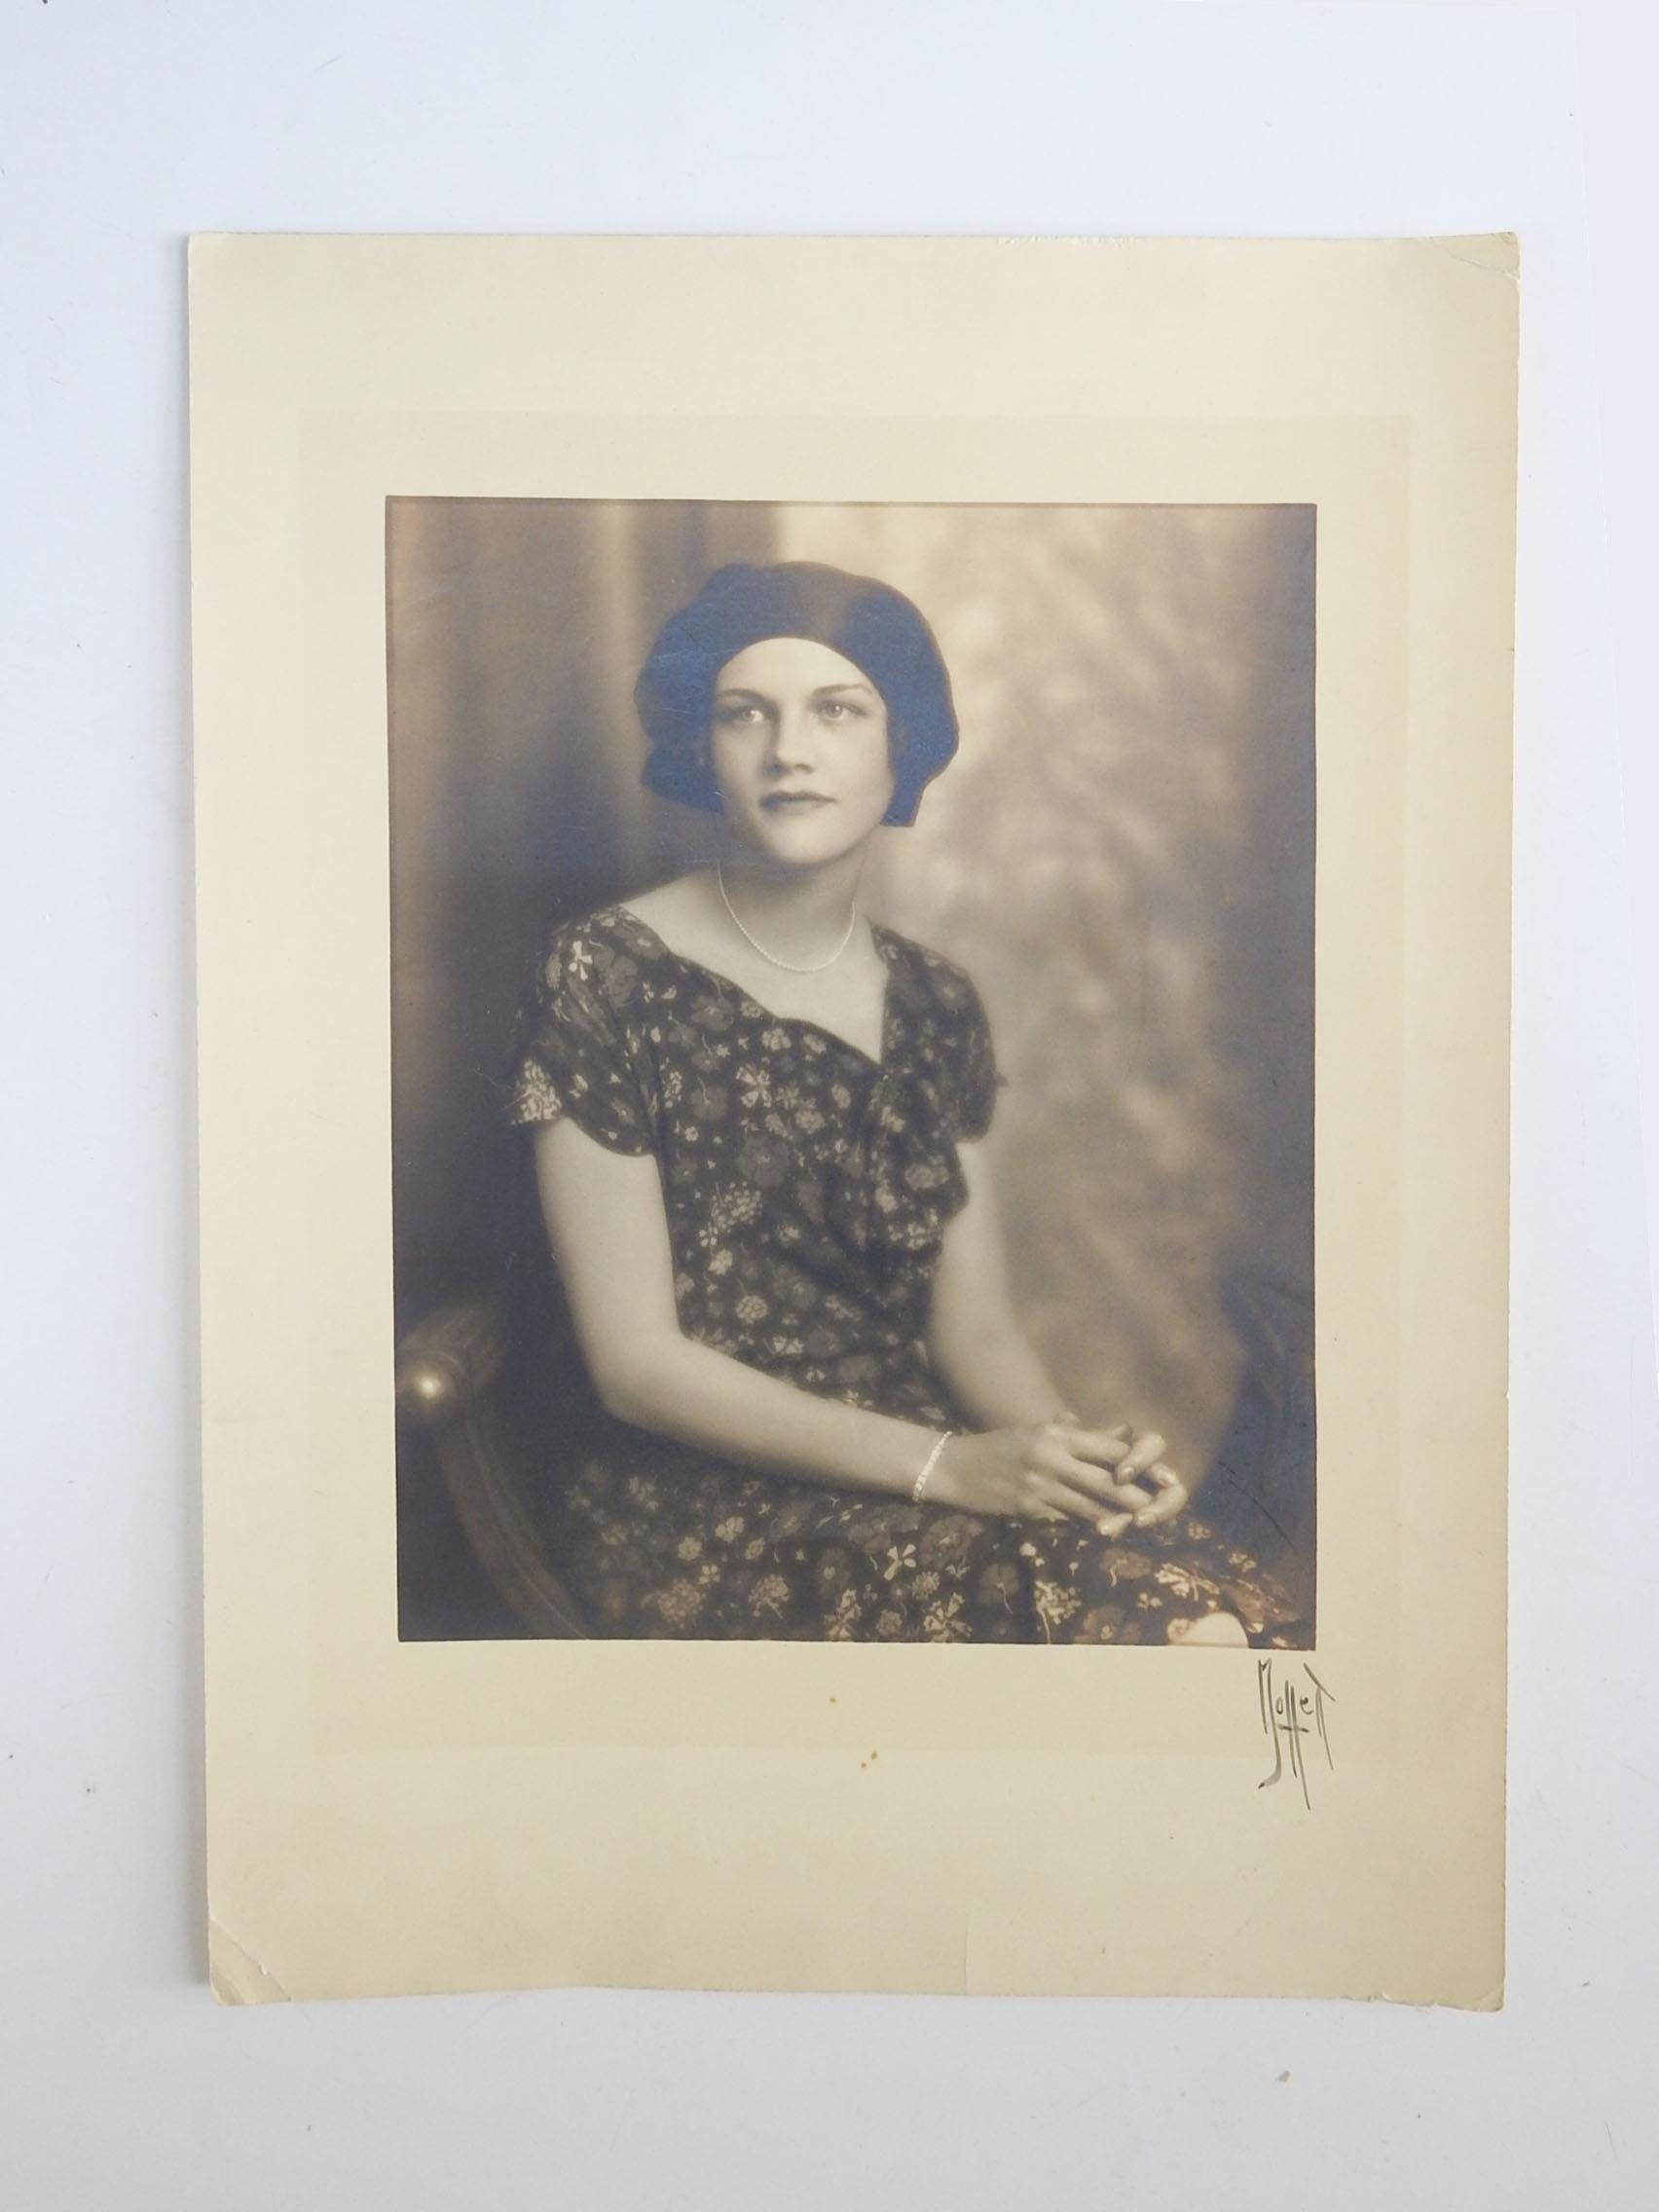 Vintage circa 1920's sepia getönten Porträtfotografie der Frau. Signiert Moffett unten rechts am Rand. Ungerahmt, kleine Eckfalten.